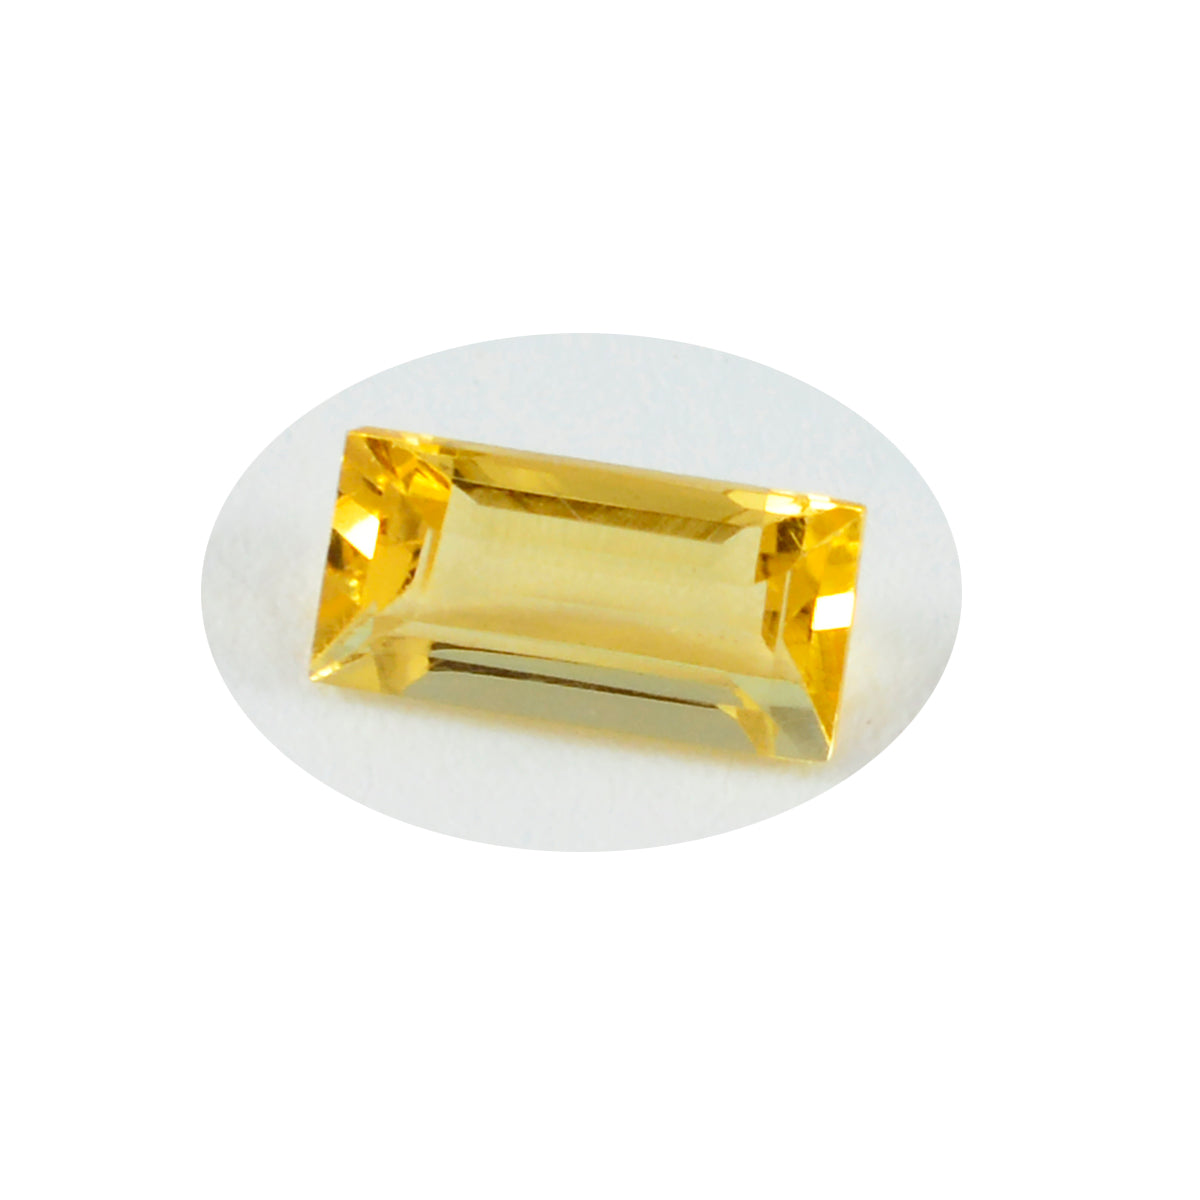 Riyogems 1 pièce de citrine jaune véritable à facettes 8x16mm en forme de baguette, pierre précieuse en vrac de qualité mignonne